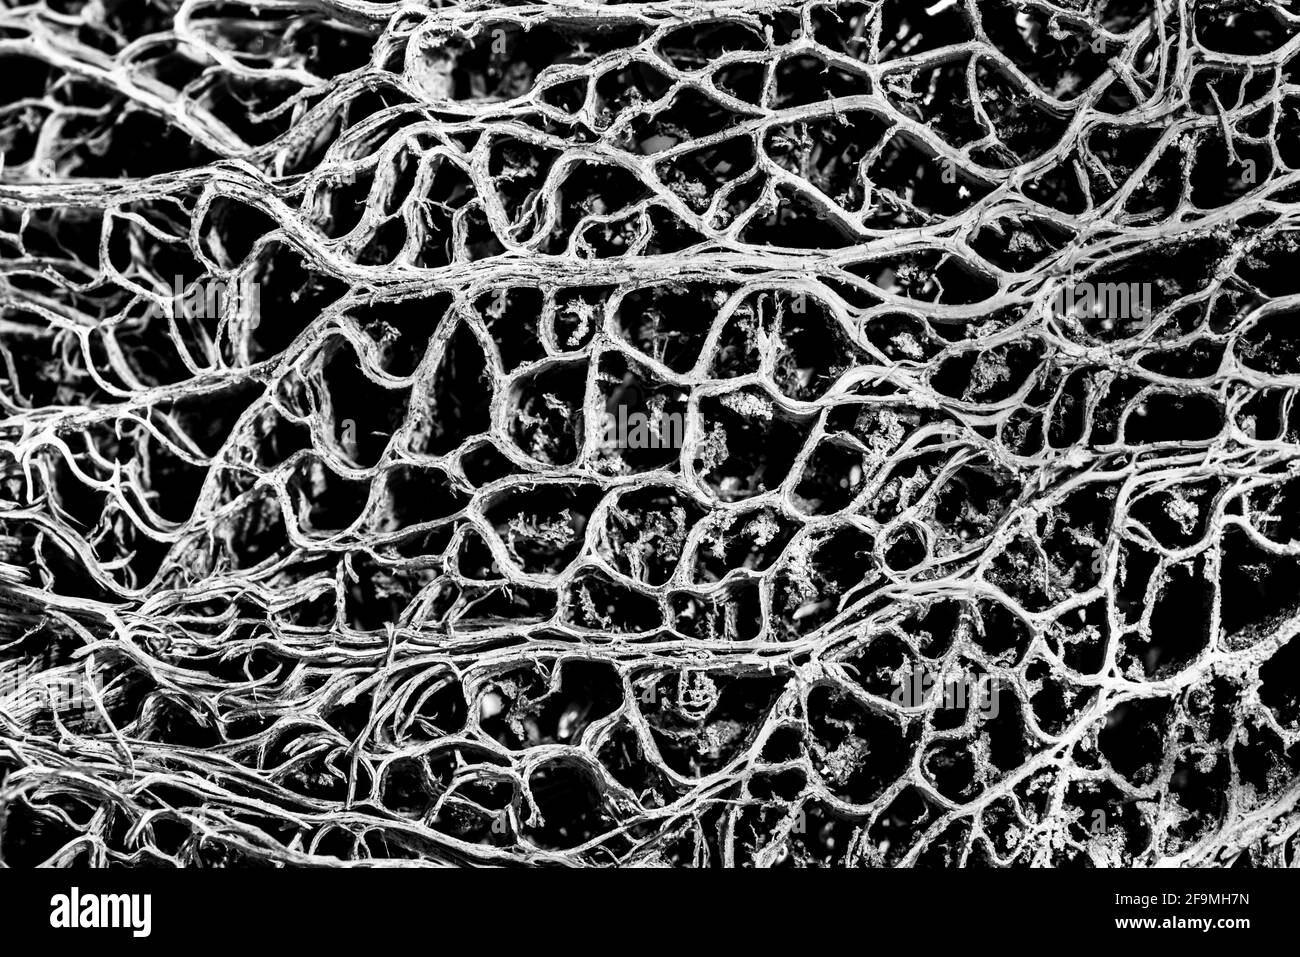 Vene del sistema vascolare da un Cactus Foto Stock